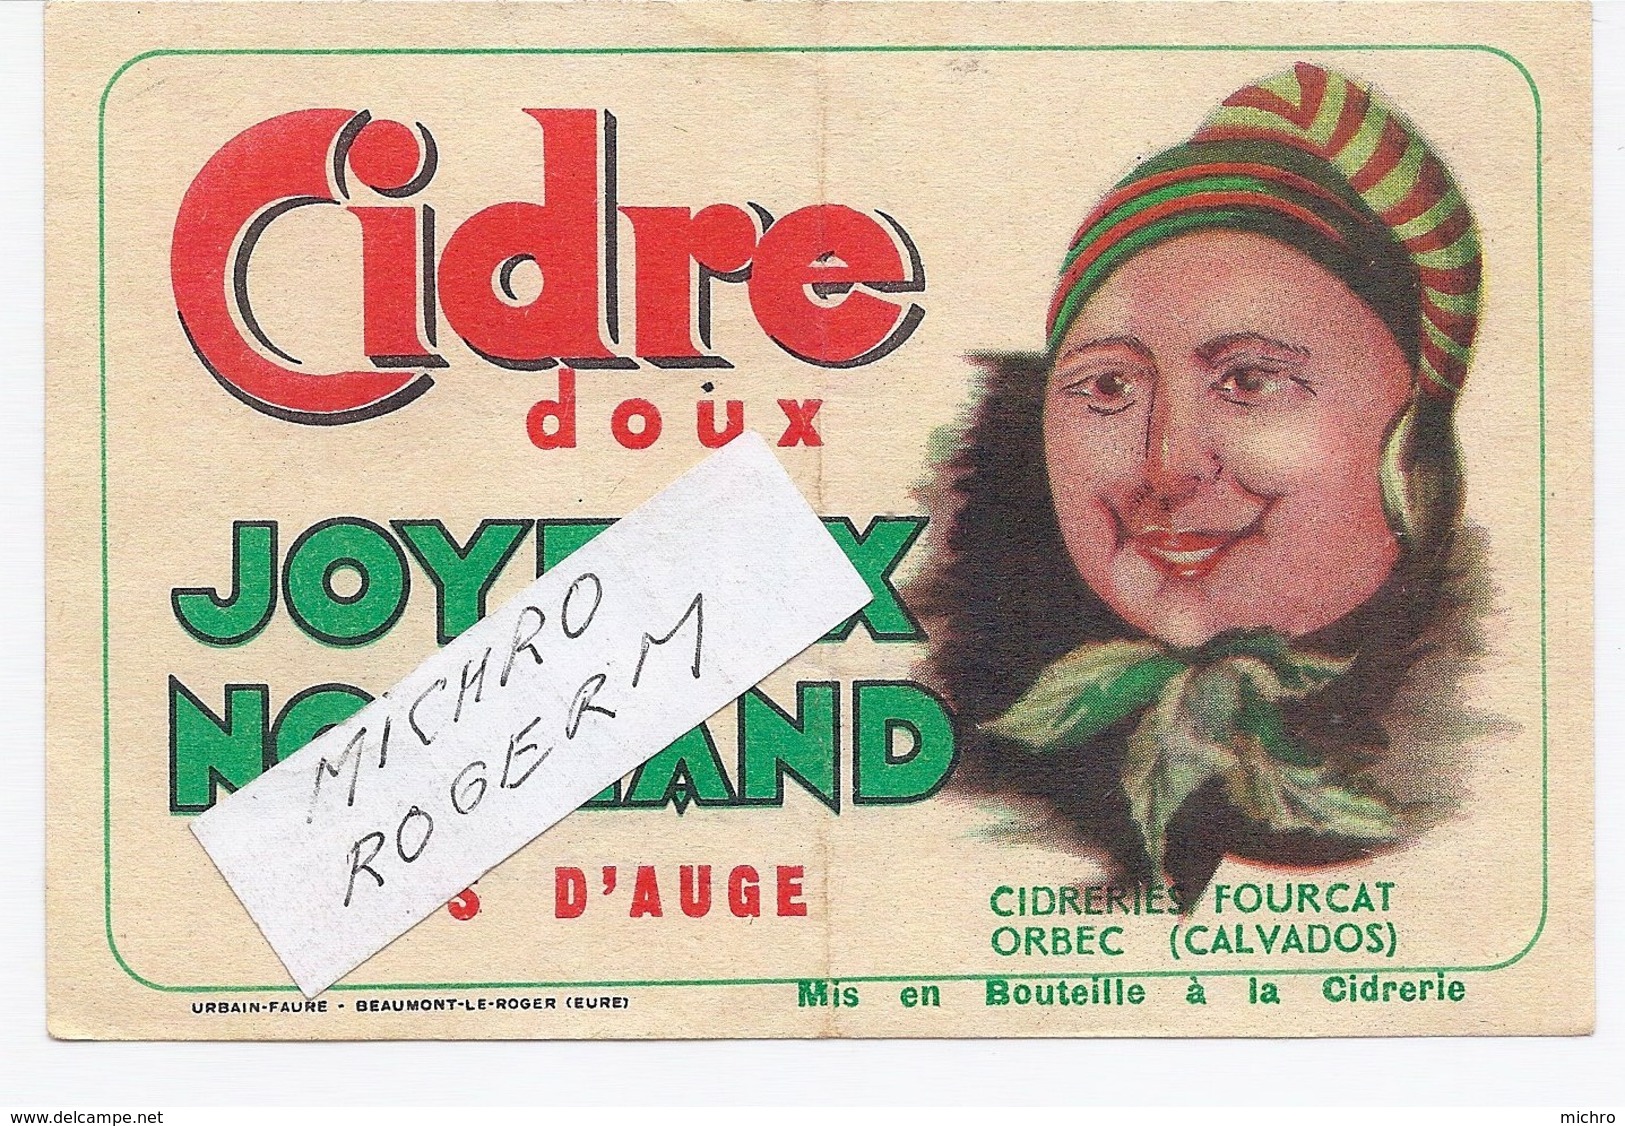 ORBEC 14 - Cidrerie FOURCAT - Etiquette Du CIDRE "joyeux Normand" - 551119 - Publicidad